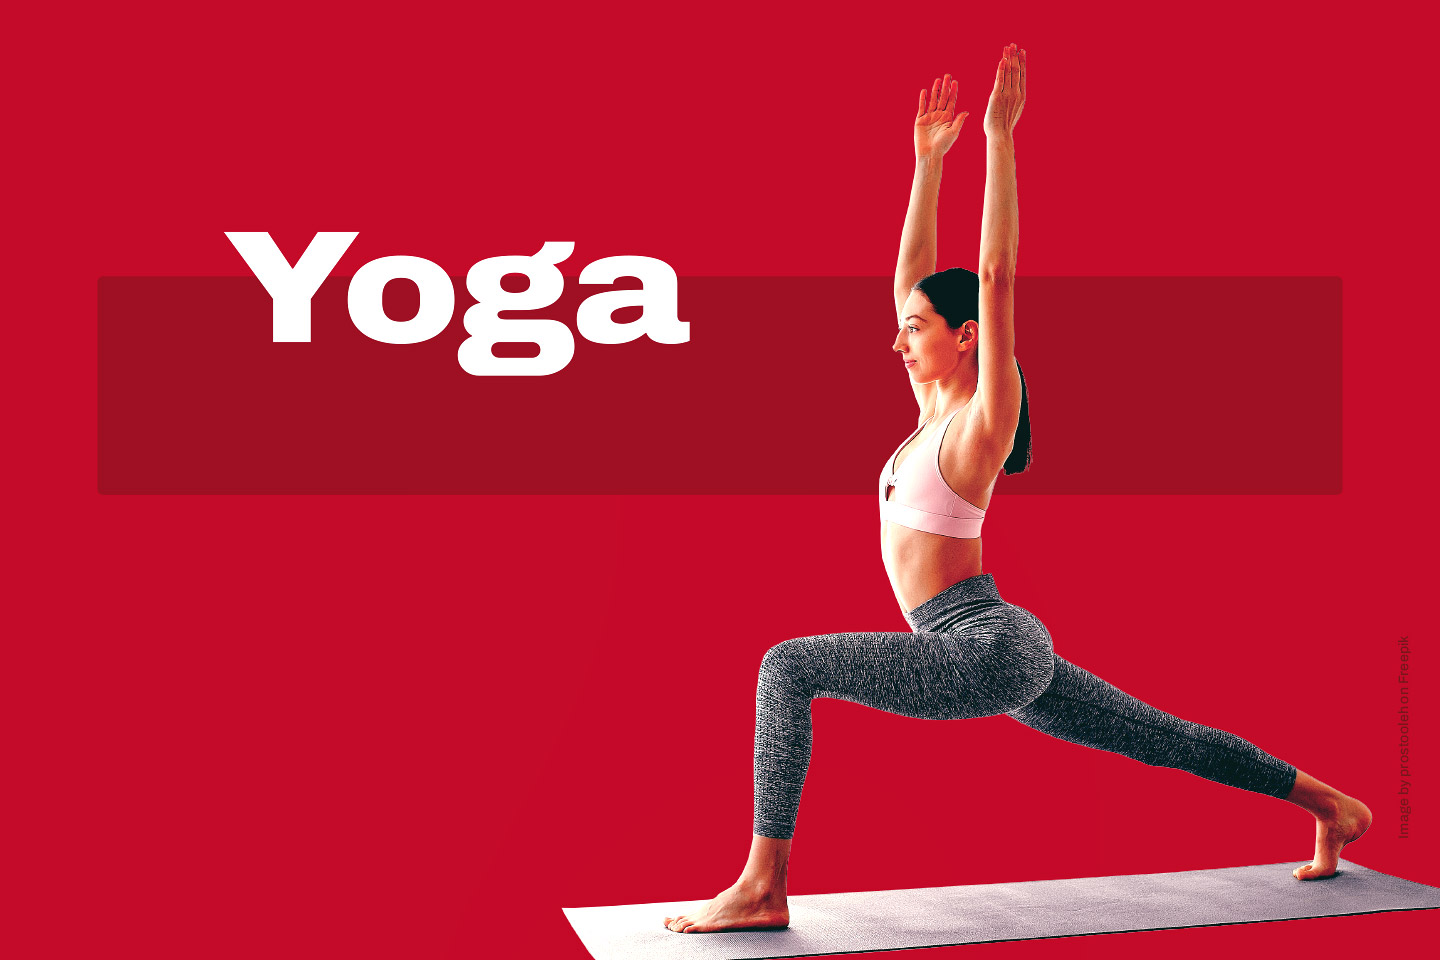 Ab Oktober bieten wir einen Yoga-Kurs an: Yoga für die Wirbelsäule.